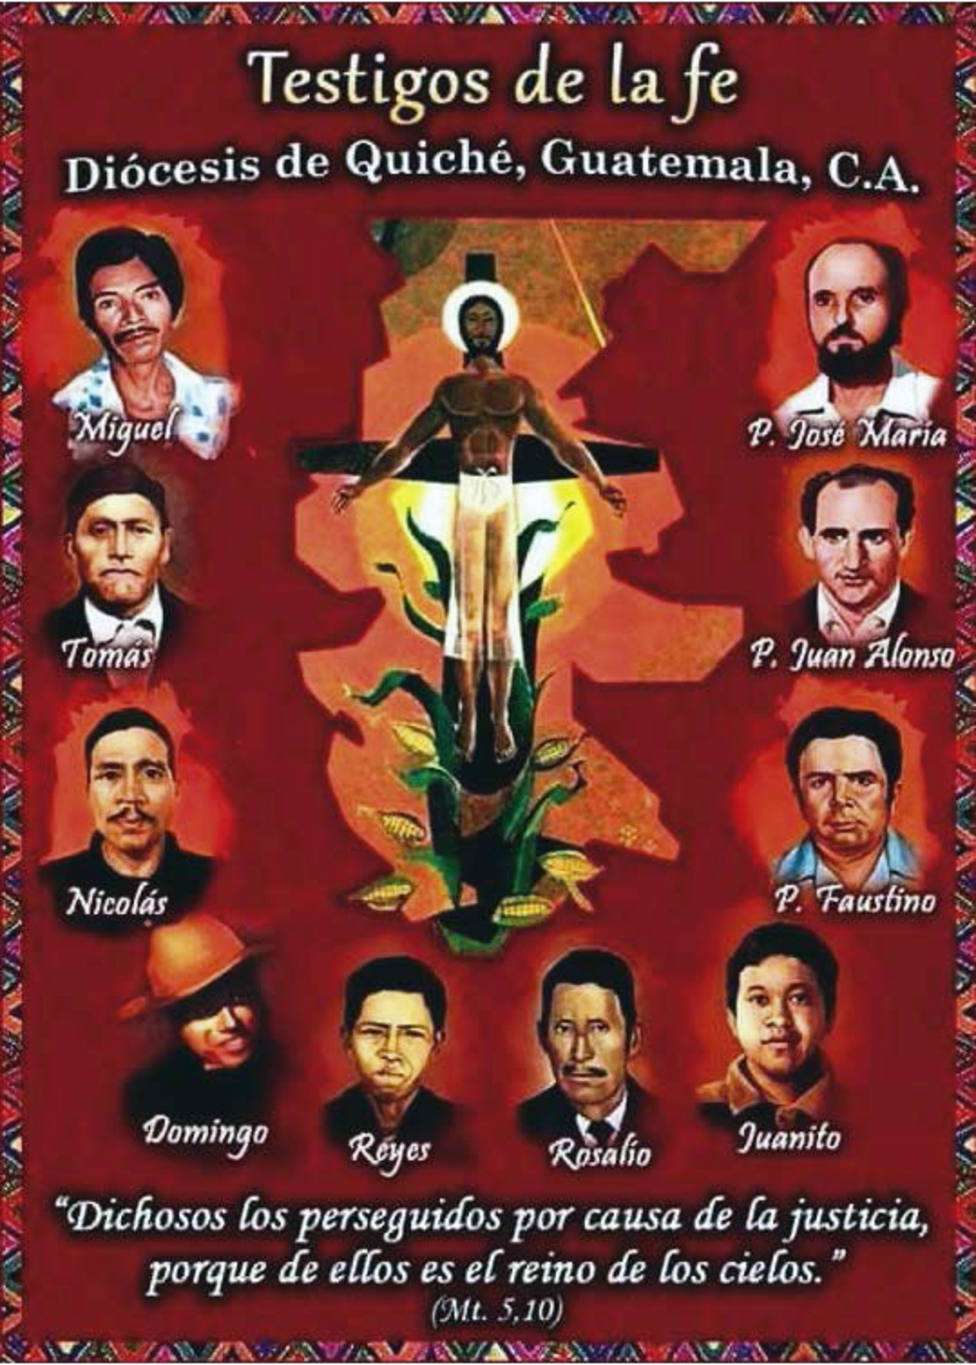 La historia de tres sacerdotes españoles asesinados a principios de los años 80 en Guatemala